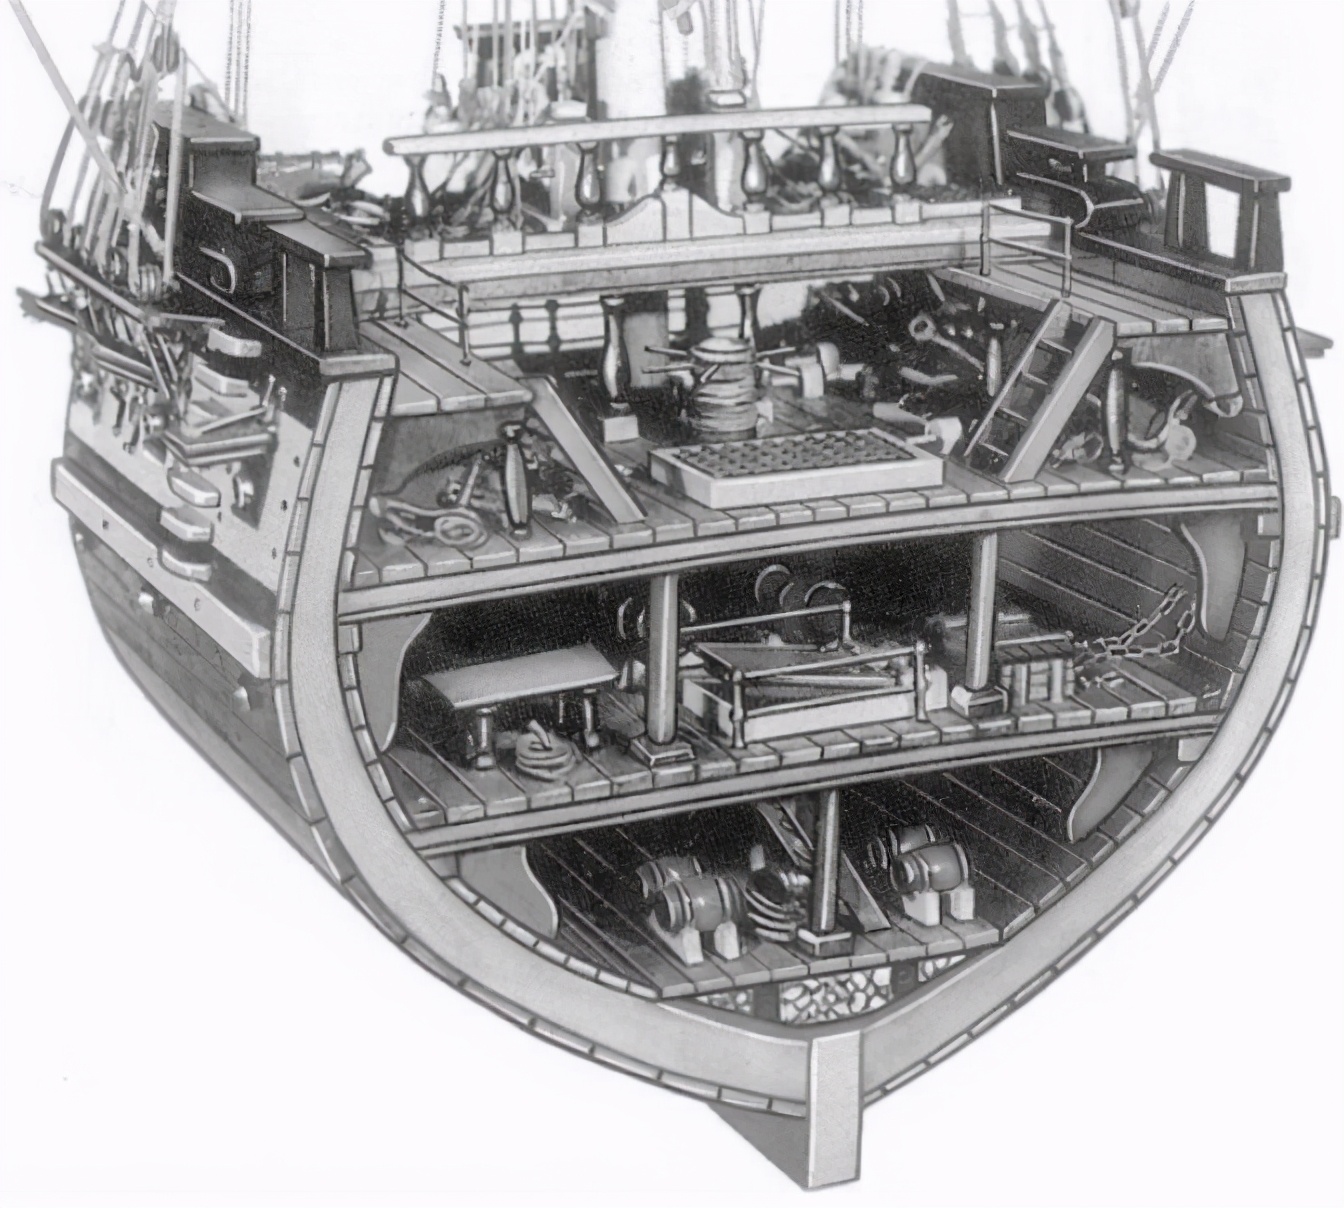 西方风帆战舰船壳为多层木板交错结构,较为坚固,战列舰的船壳甚至厚